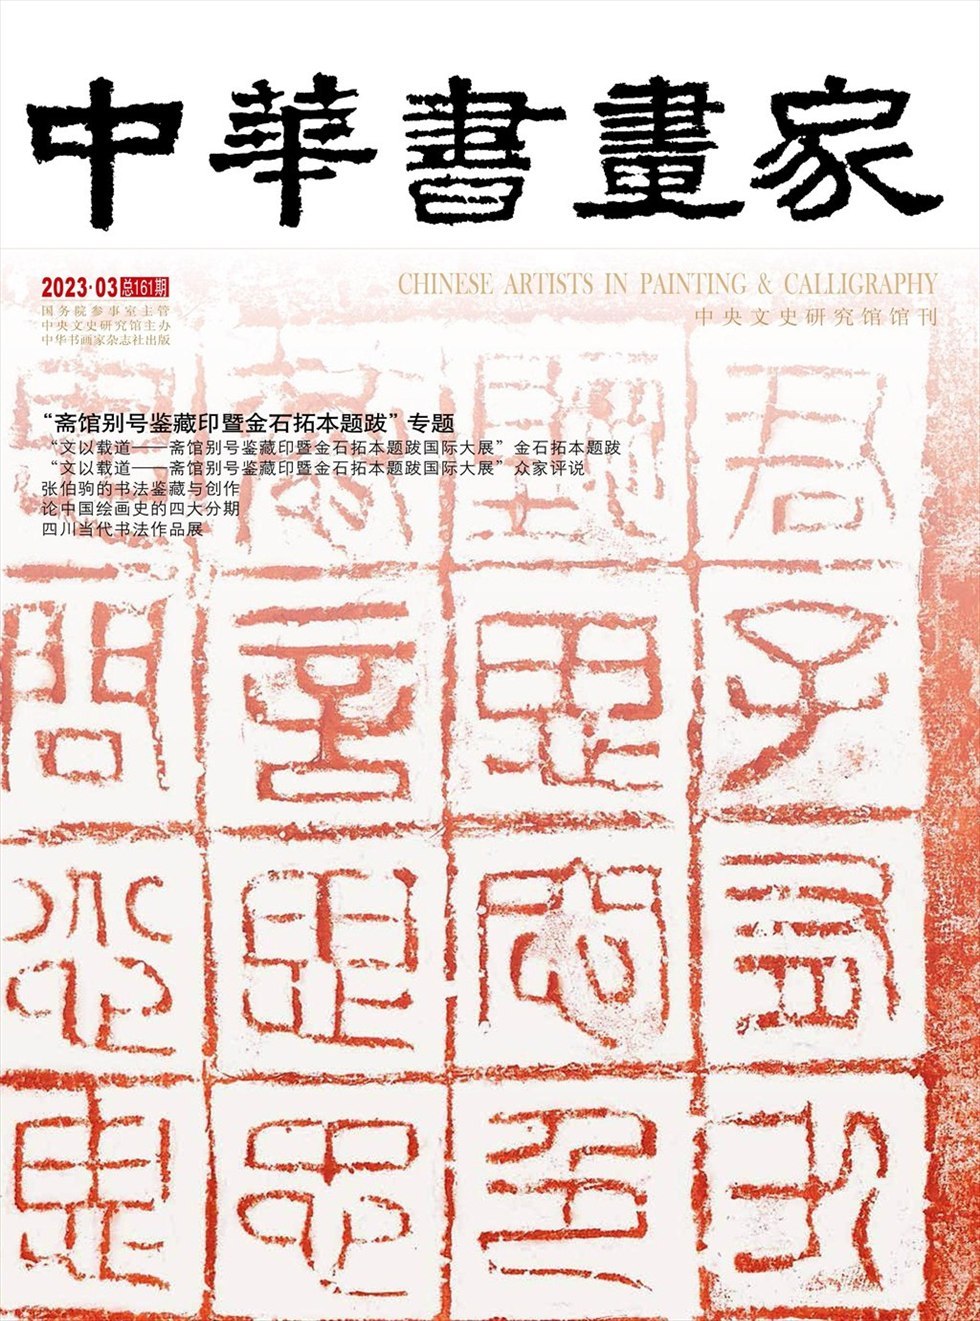 中华书画家杂志封面